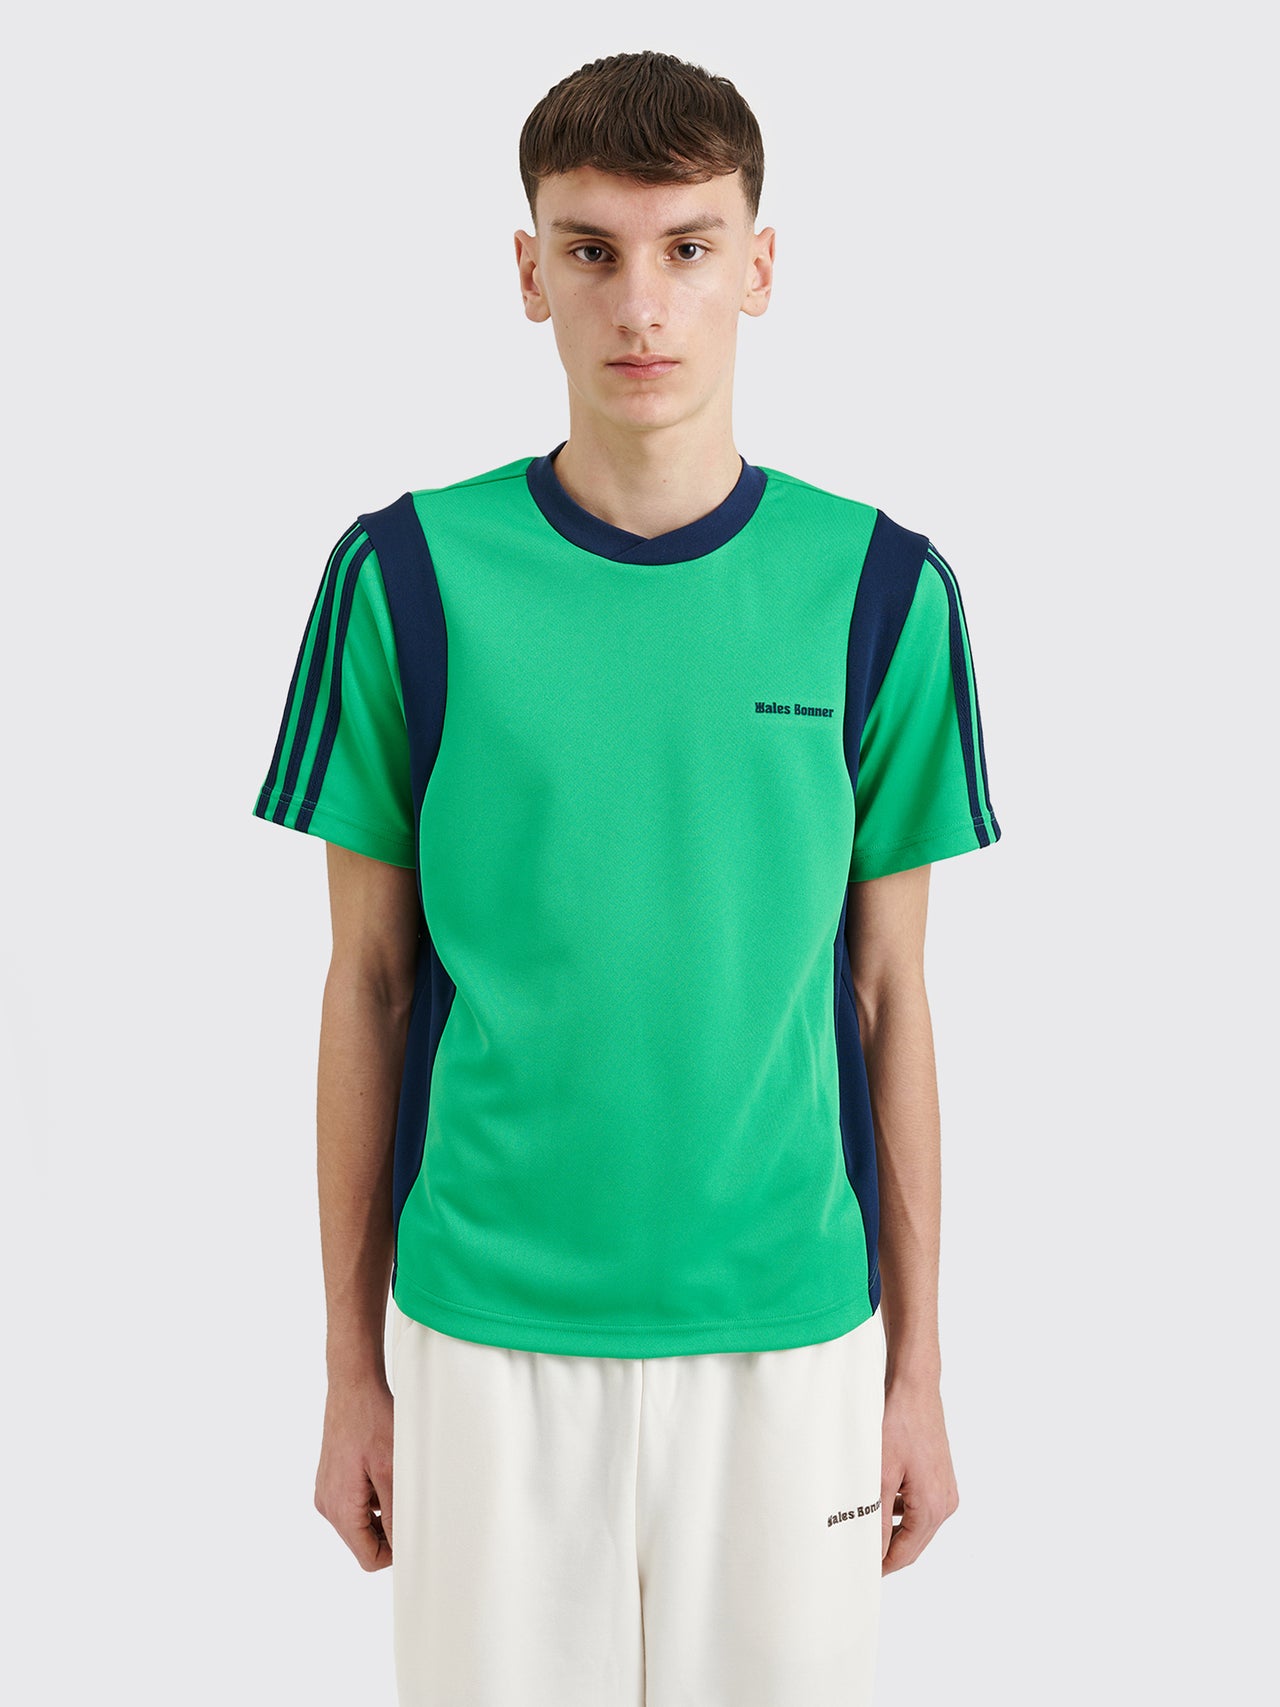 adidas Originals by Wales Bonner Football Shirt Vivid Green